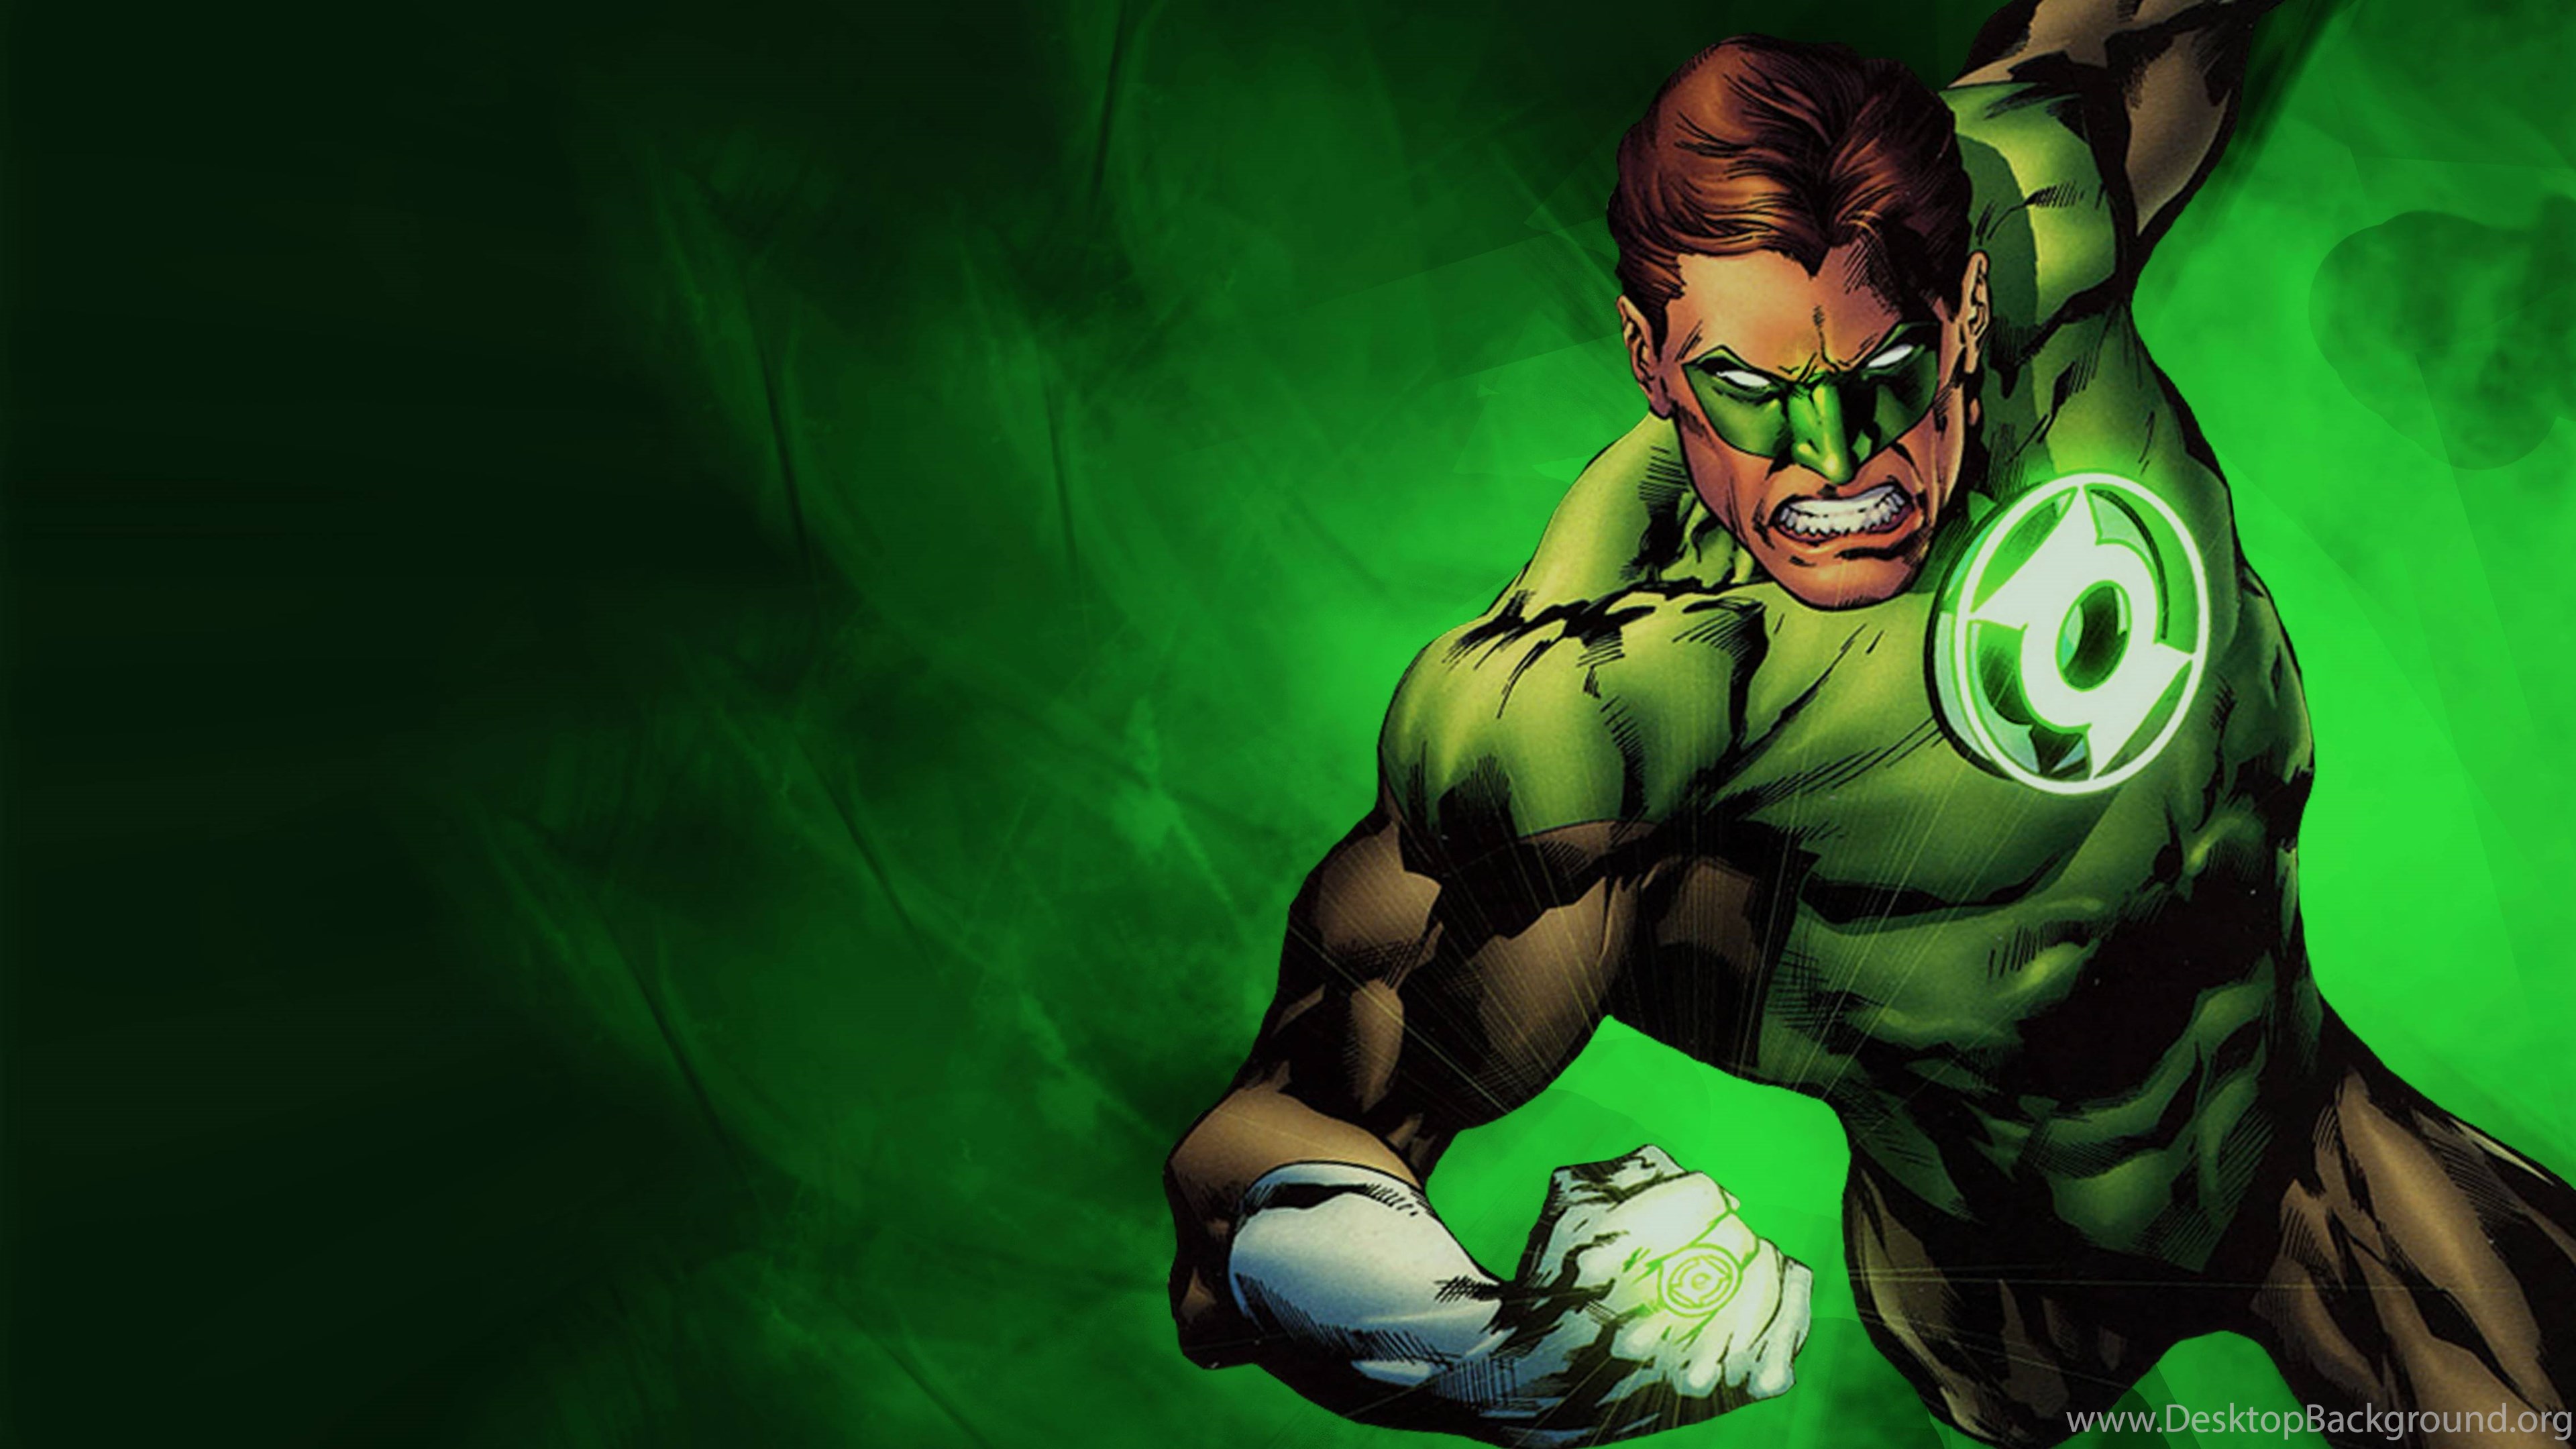 grüne laternentapete,erfundener charakter,superheld,superschurke,held,illustration